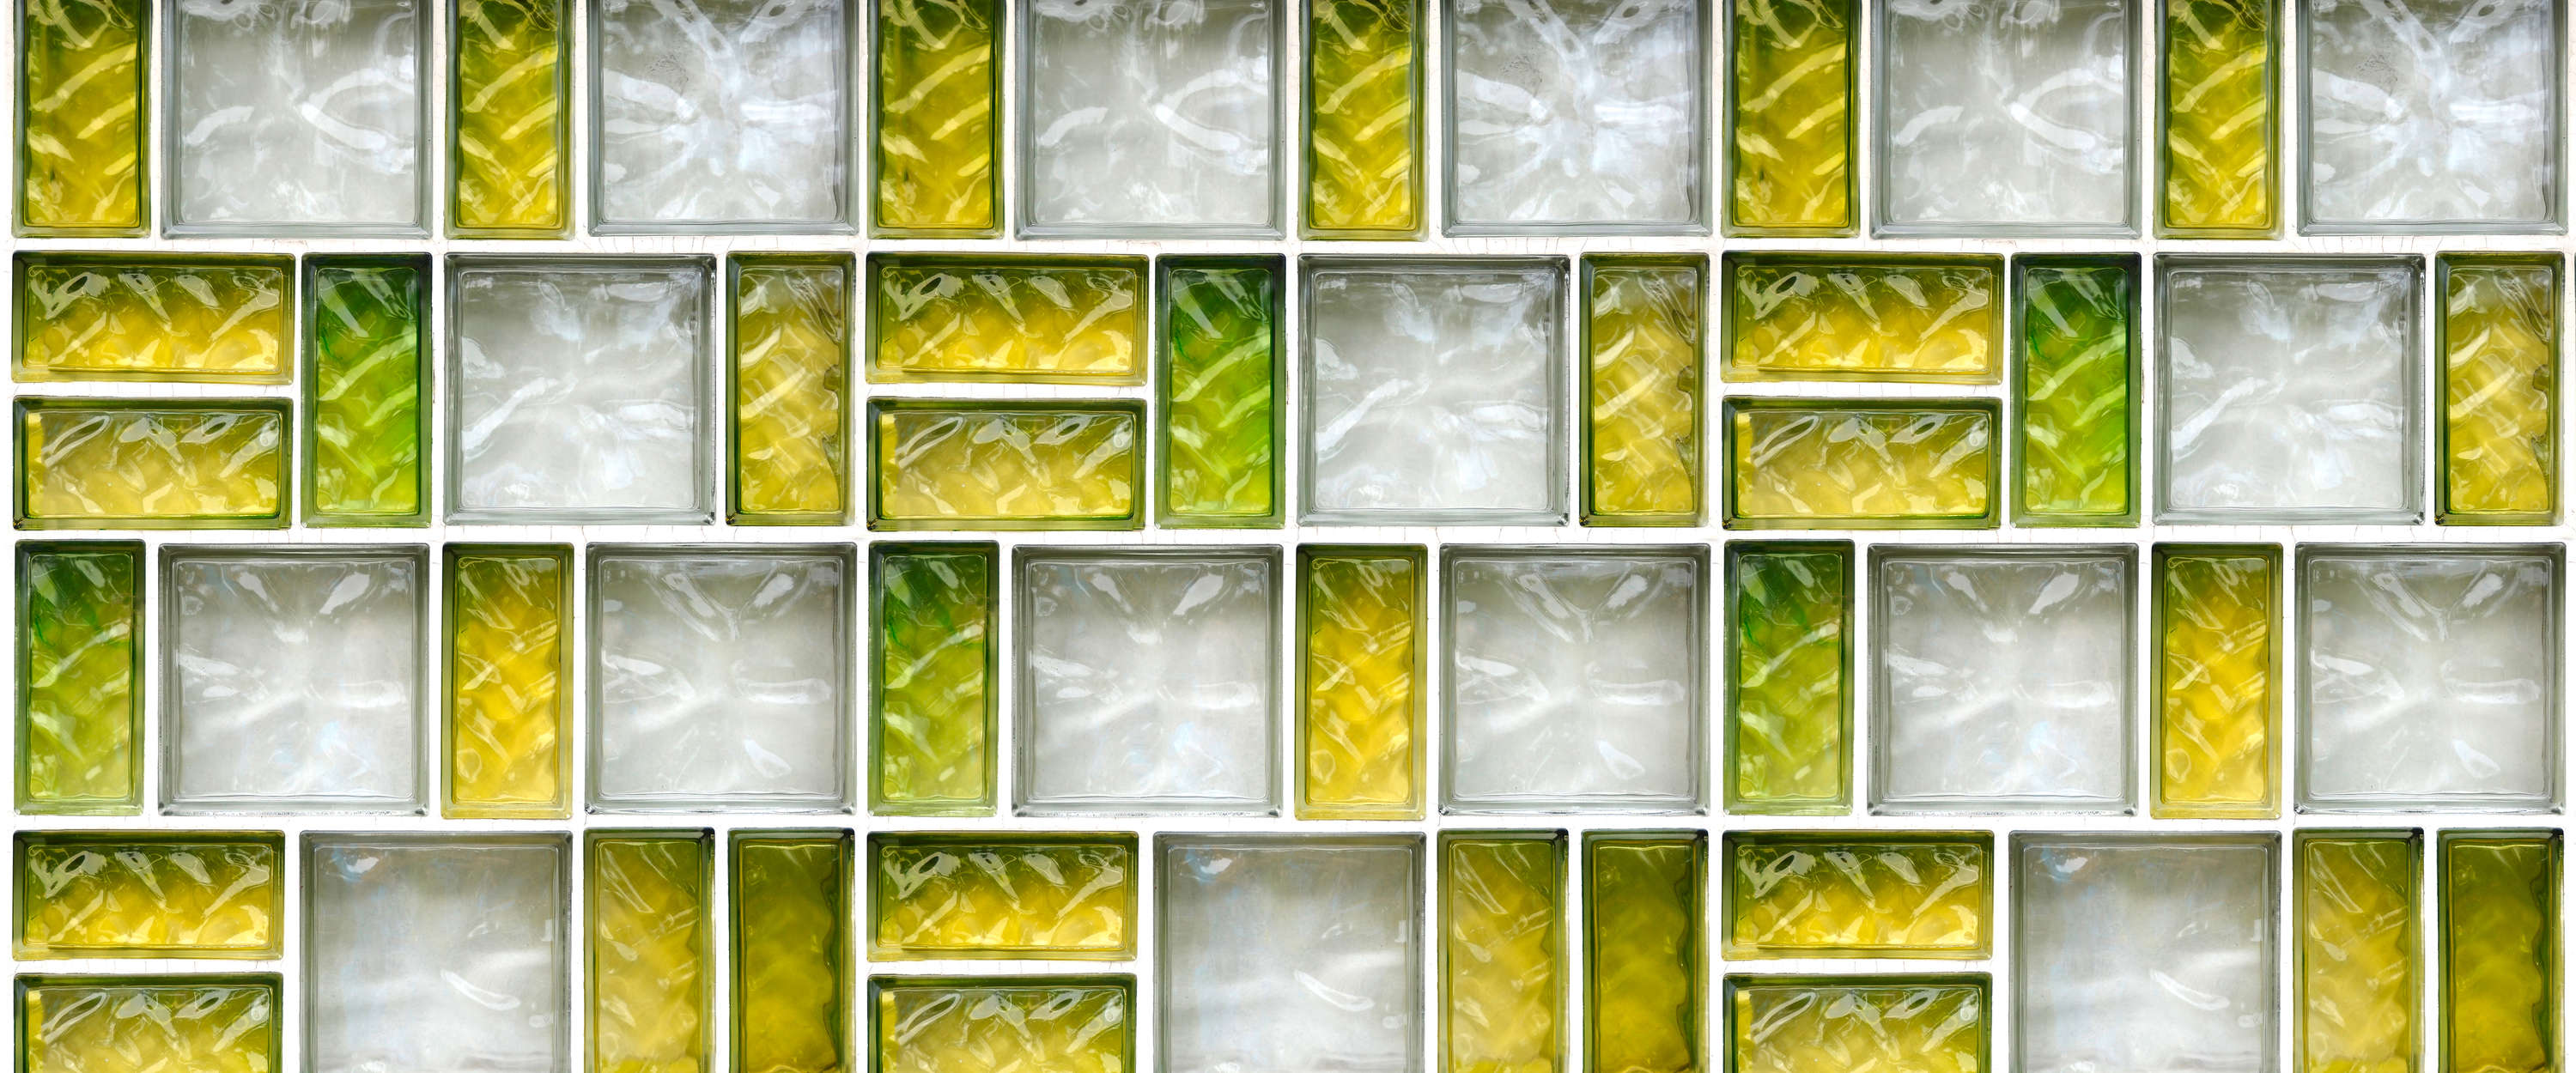             Papel pintado de bloques de vidrio de diseño retro 3D con aspecto de baldosa
        